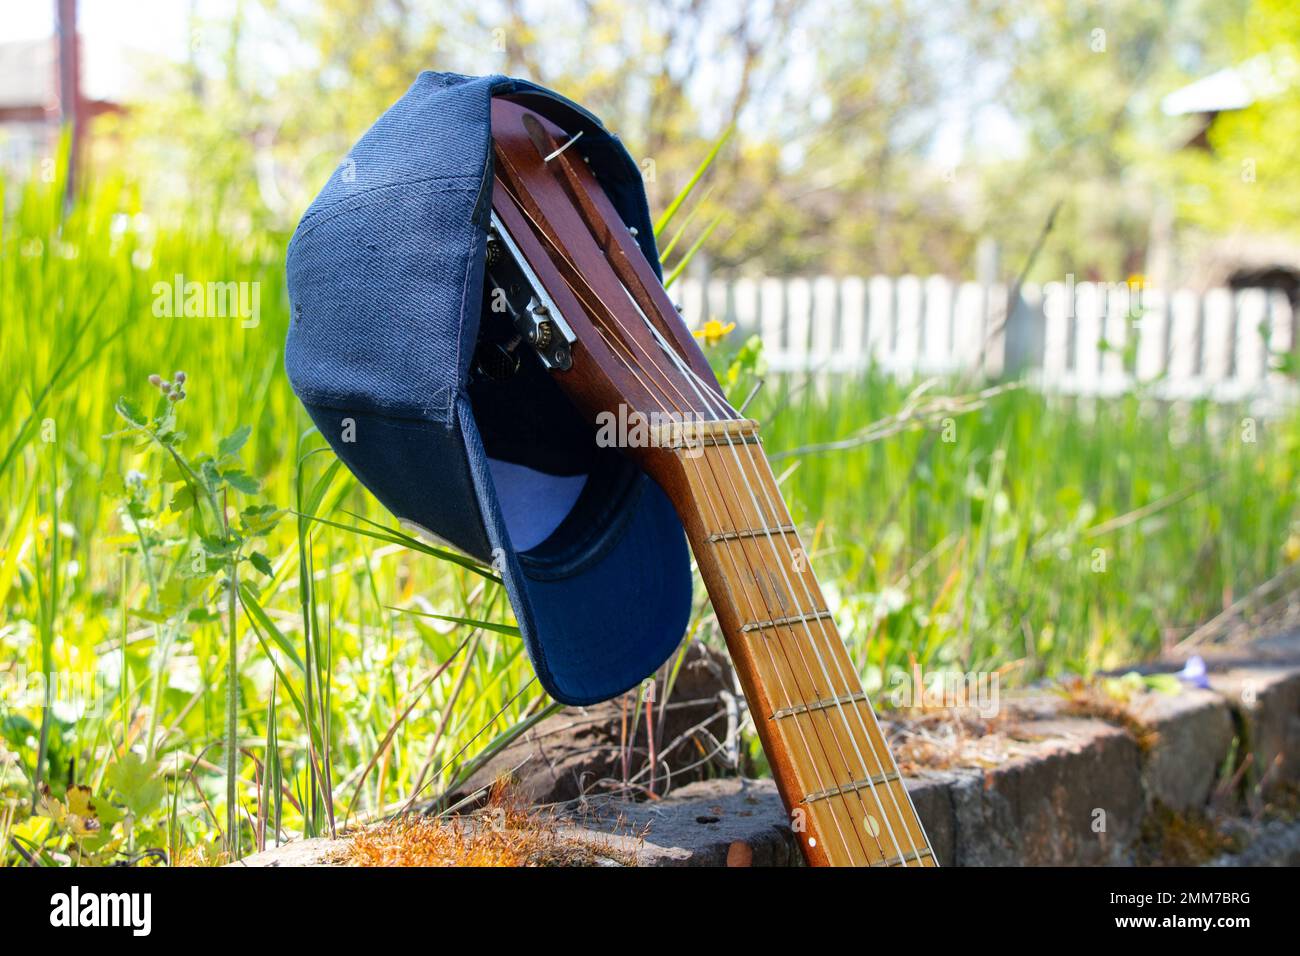 casquette de baseball bleue suspendue sur une vieille guitare se tient sur un fond d'herbe Banque D'Images